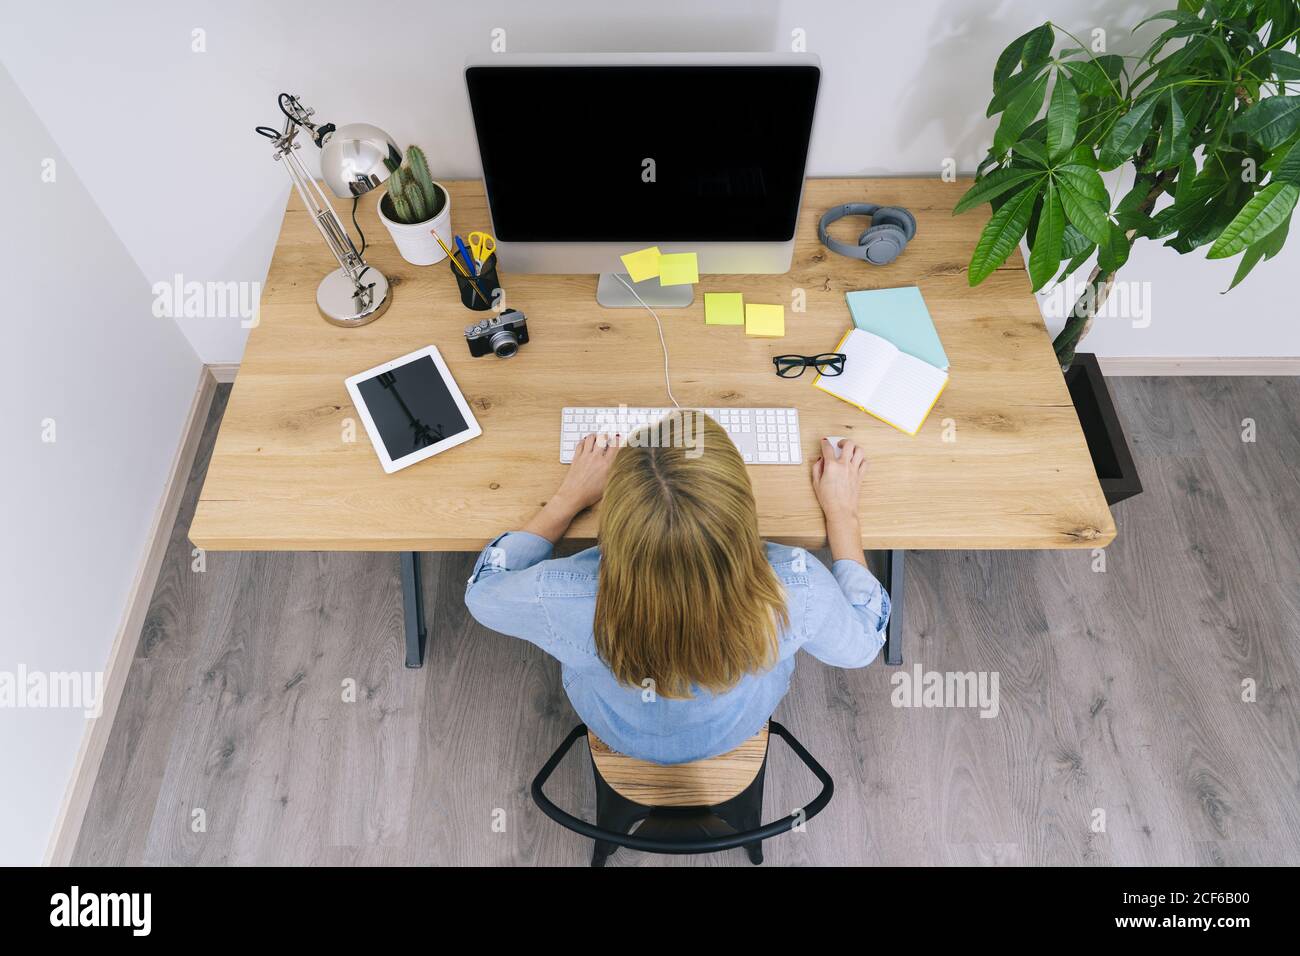 Vue de dessus de la femme blanche blonde anonyme dans des vêtements  décontractés assis sur un bureau en bois travaillant sur un ordinateur dans  un bureau à domicile moderne Photo Stock -